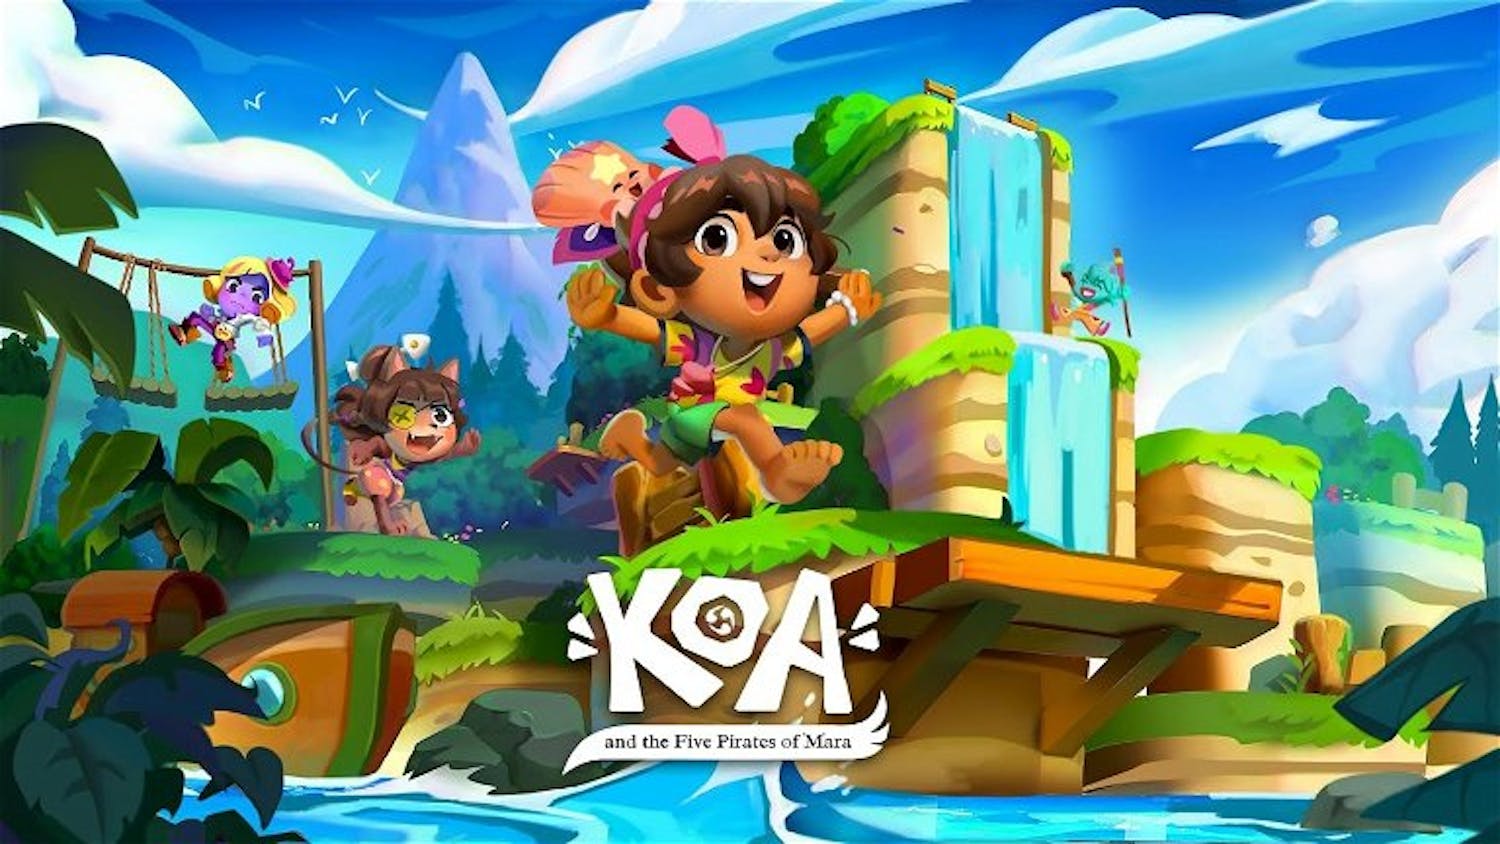 Un videojoc creat entre Catalunya i València: "Koa and the five pirates of Mara"